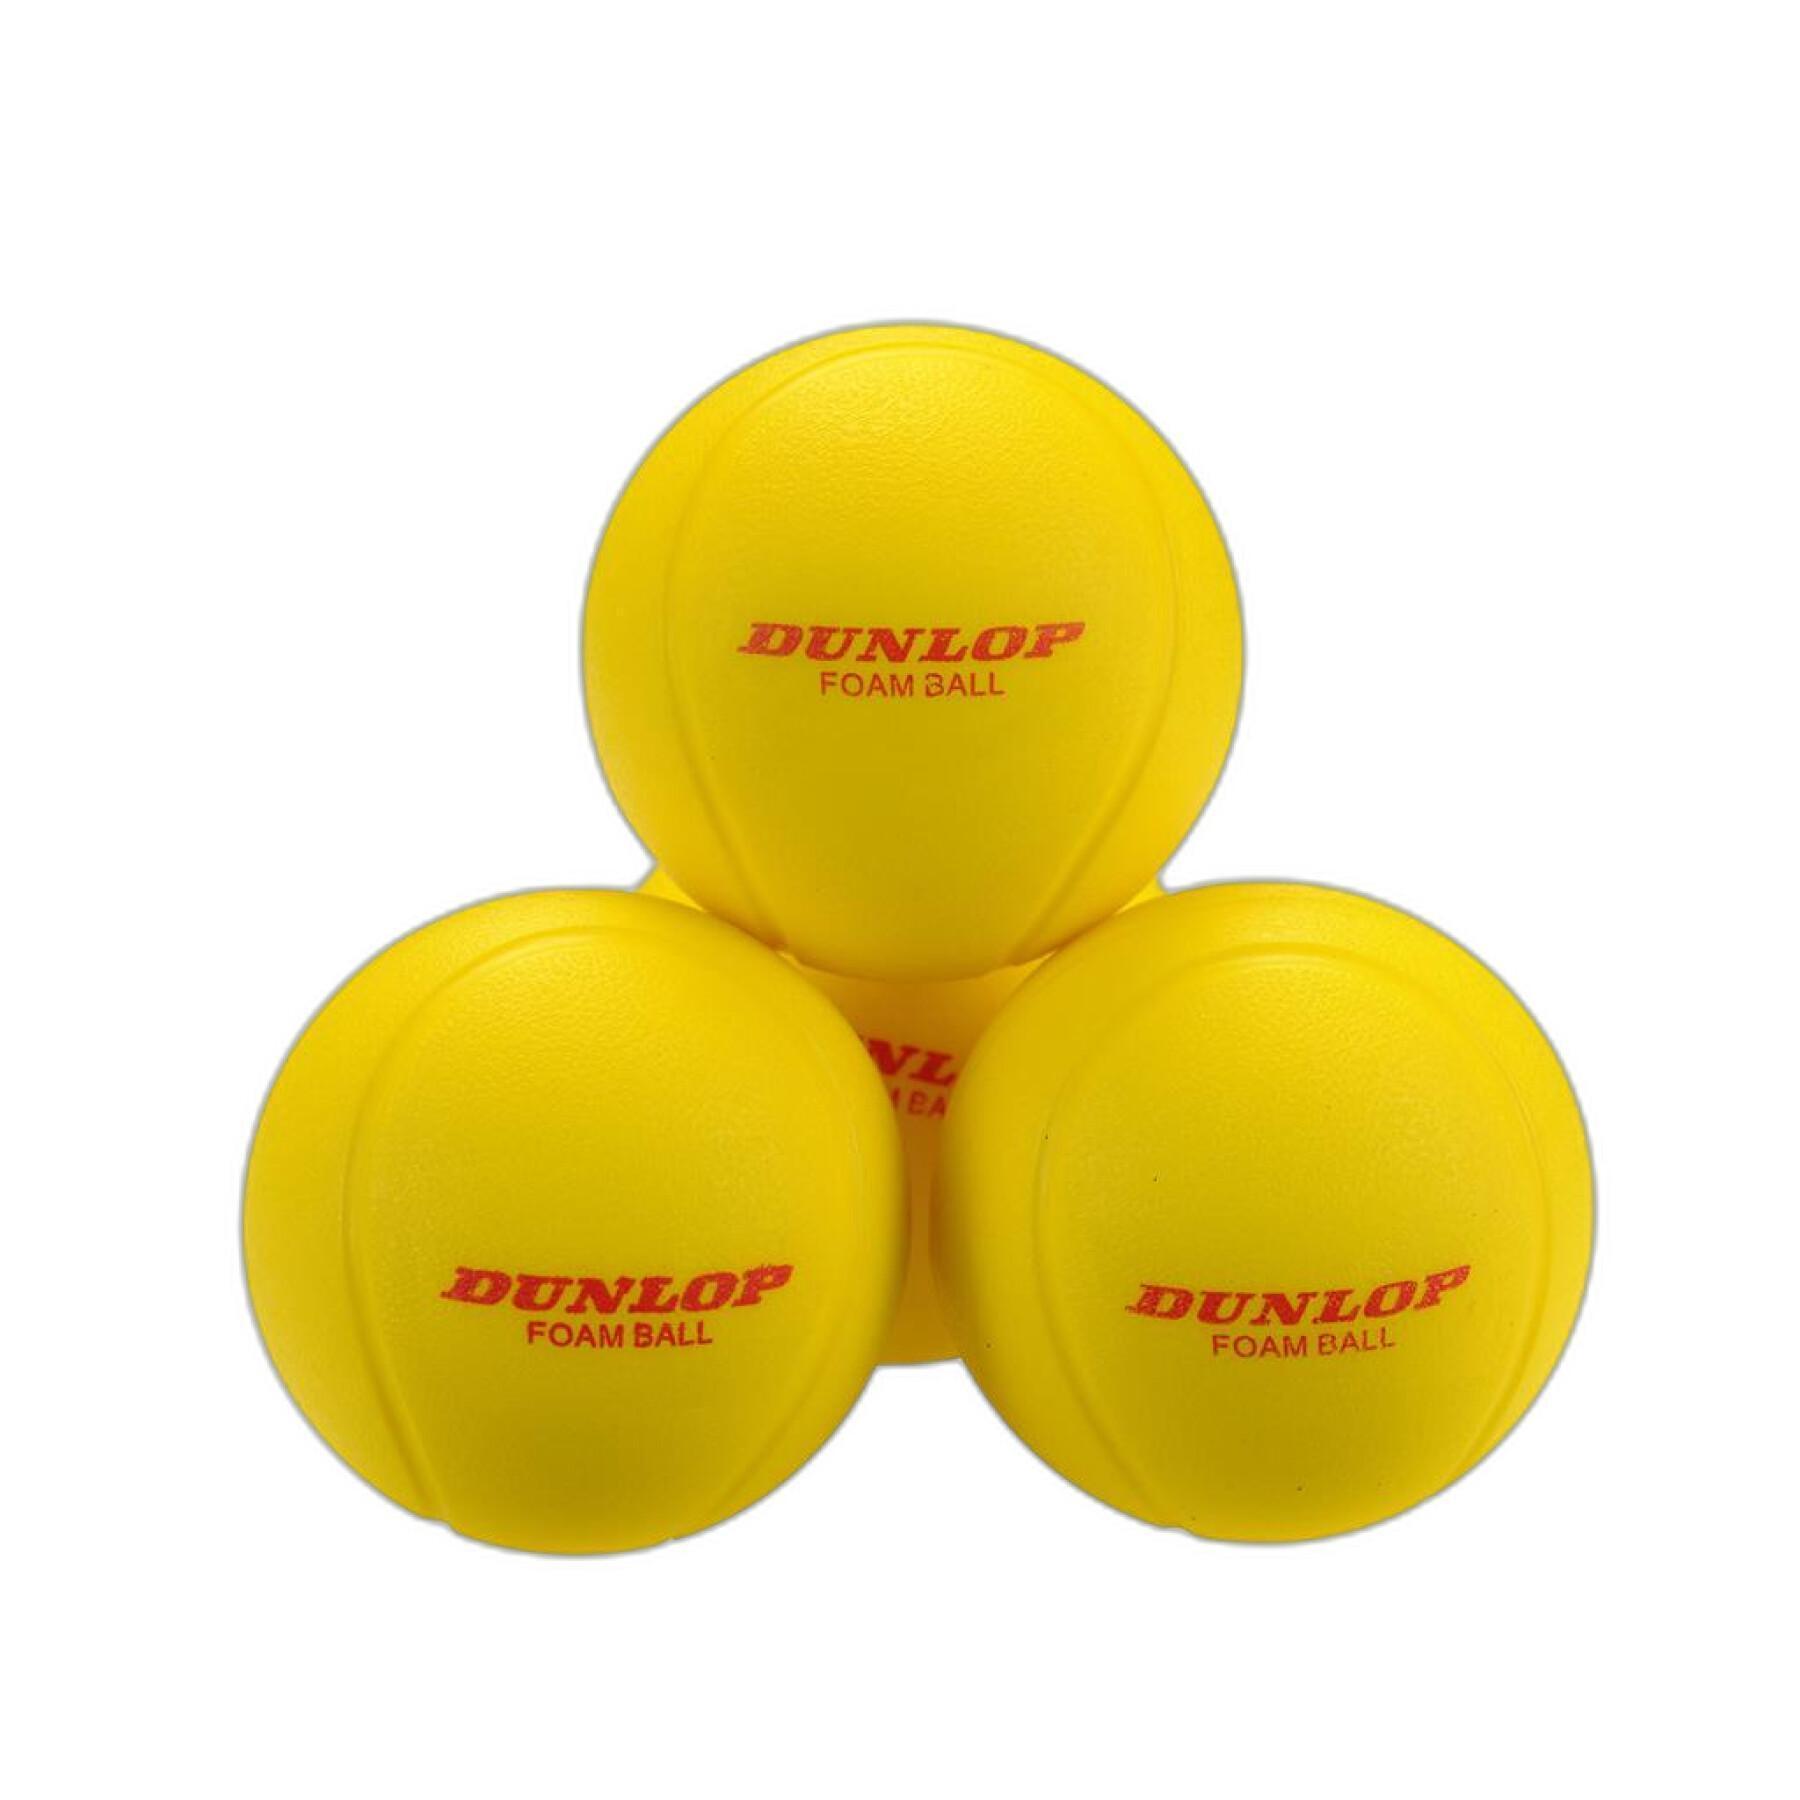 Set di 12 palline da tennis Dunlop Training Foam